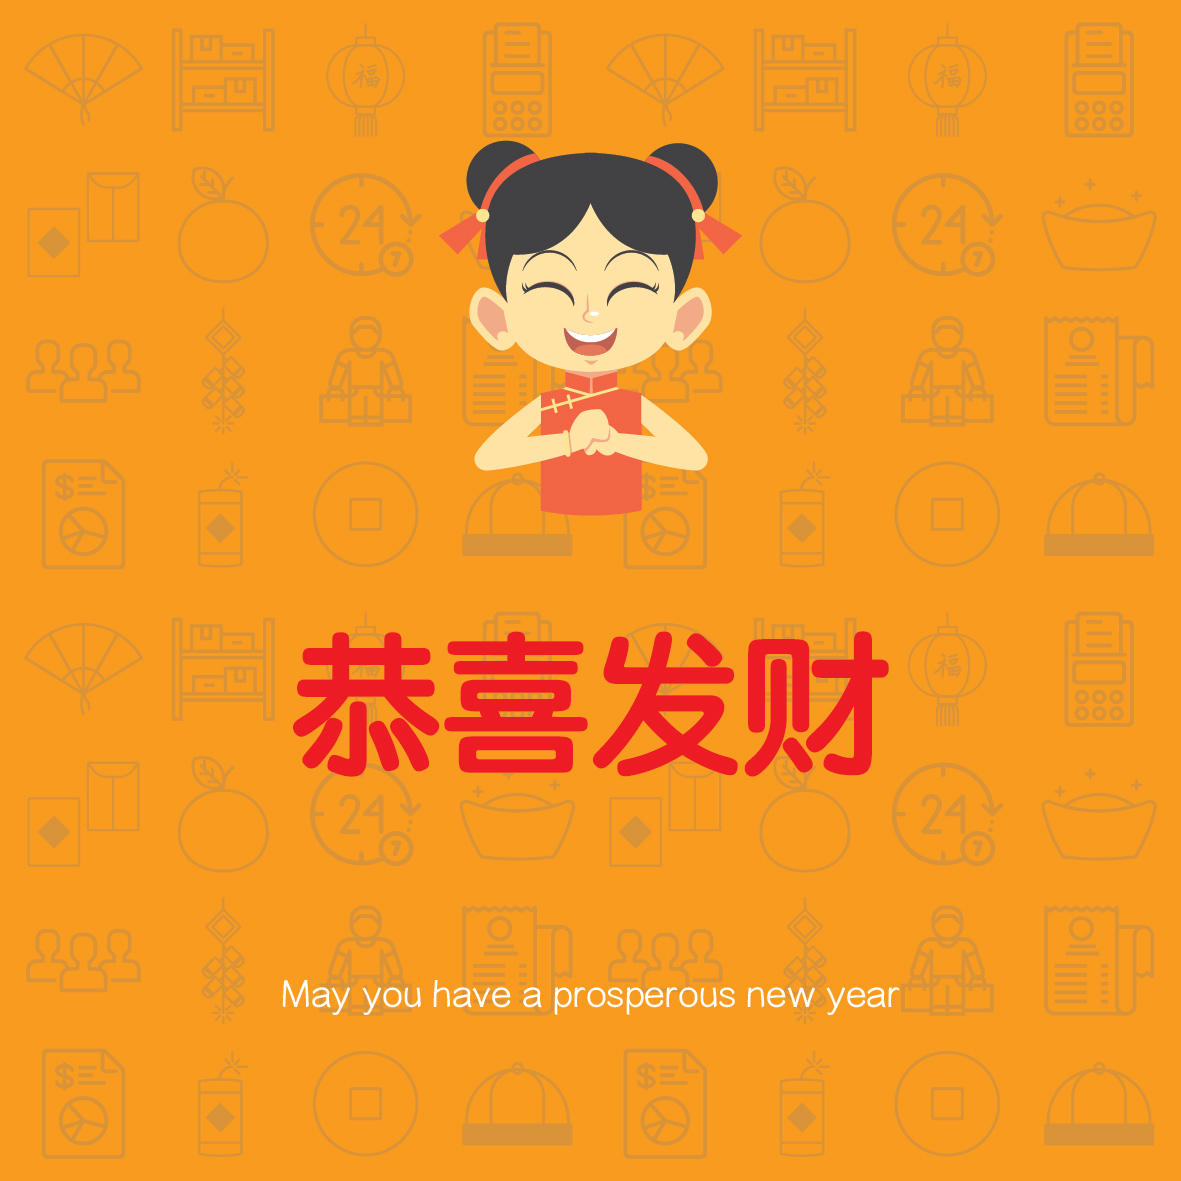 恭喜发财 2018 - Prosperous New Year